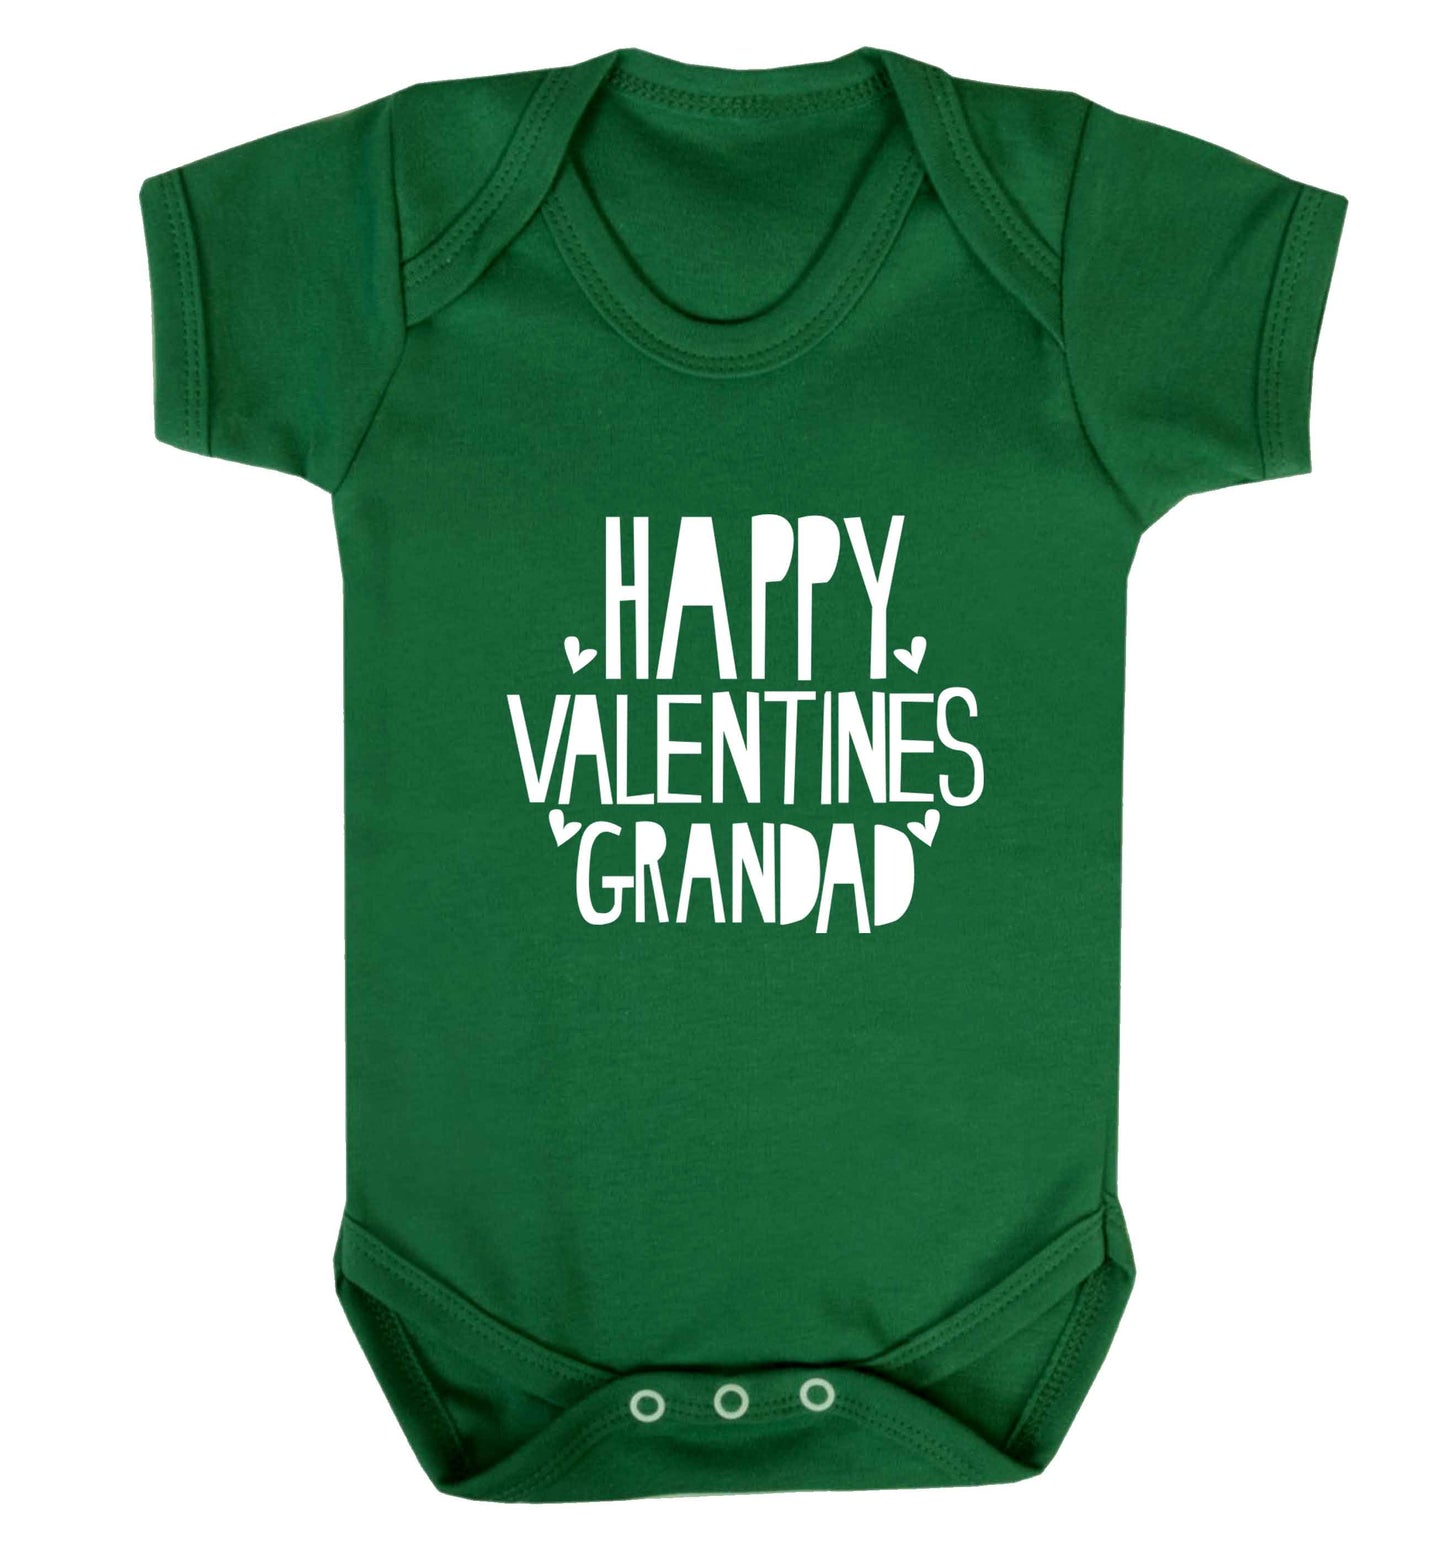 Happy valentines grandad baby vest green 18-24 months